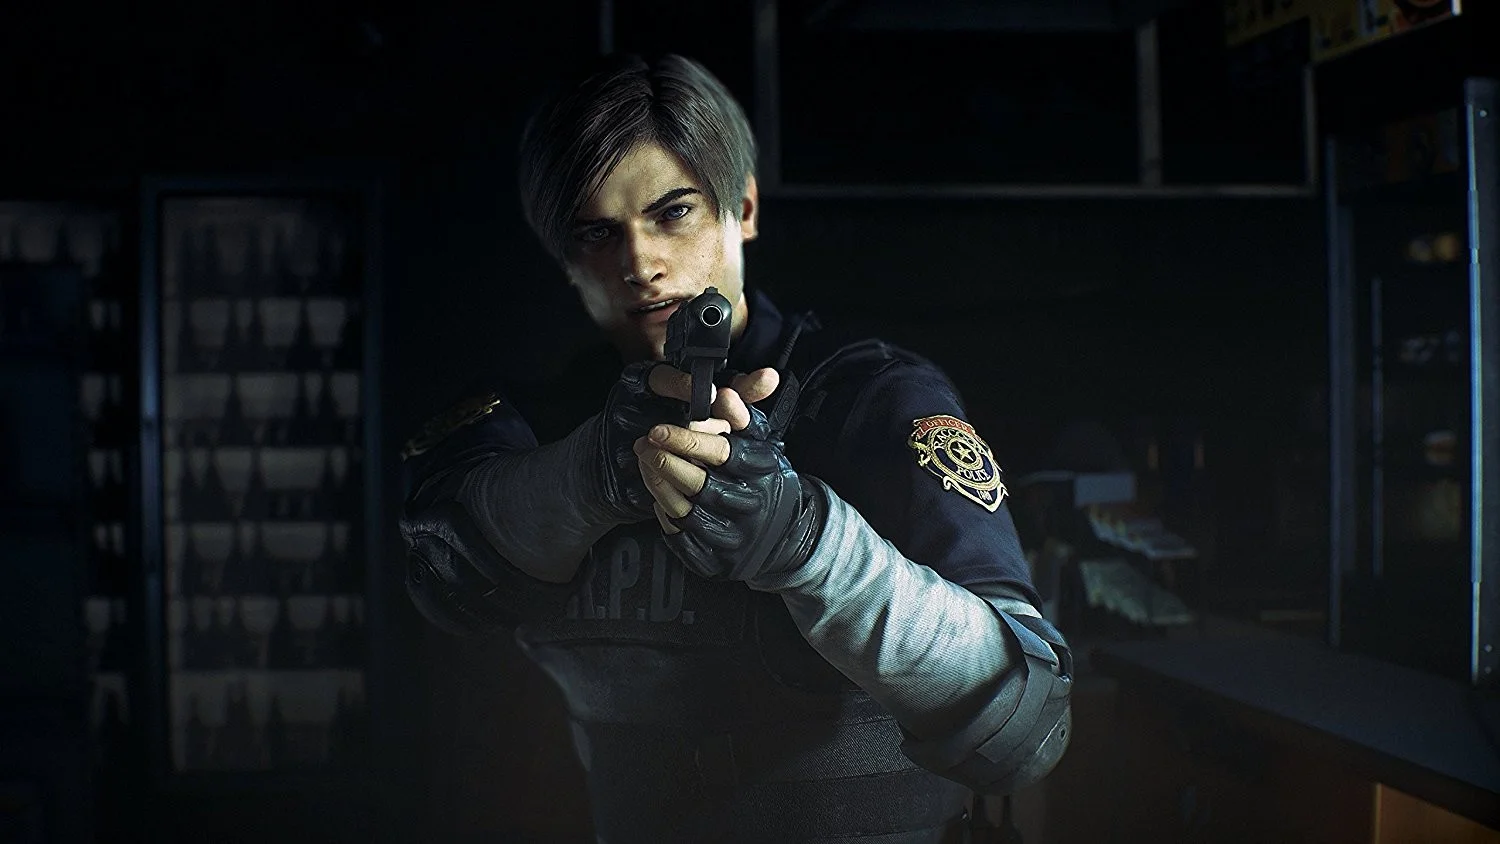 В 2019 году серия Resident Evil находится просто на невероятной высоте в плане сюжета — Resident Evil 7 написал профессиональный американский сценарист Ричард Пирси (аддоны к FEAR, Spec Ops: The Line). Но буквально на днях выходит ремейк Resident Evil 2 — отголосок тех времен, когда американцев к дизайну RE не подпускали на пушечный выстрел, а сценарии игр собирались японцами, что называется, из подручных средств. В результате флагманская серия в жанре survival horror ассоциировалась с чем угодно, но только не с хорошей, связной и впечатляющей историей.